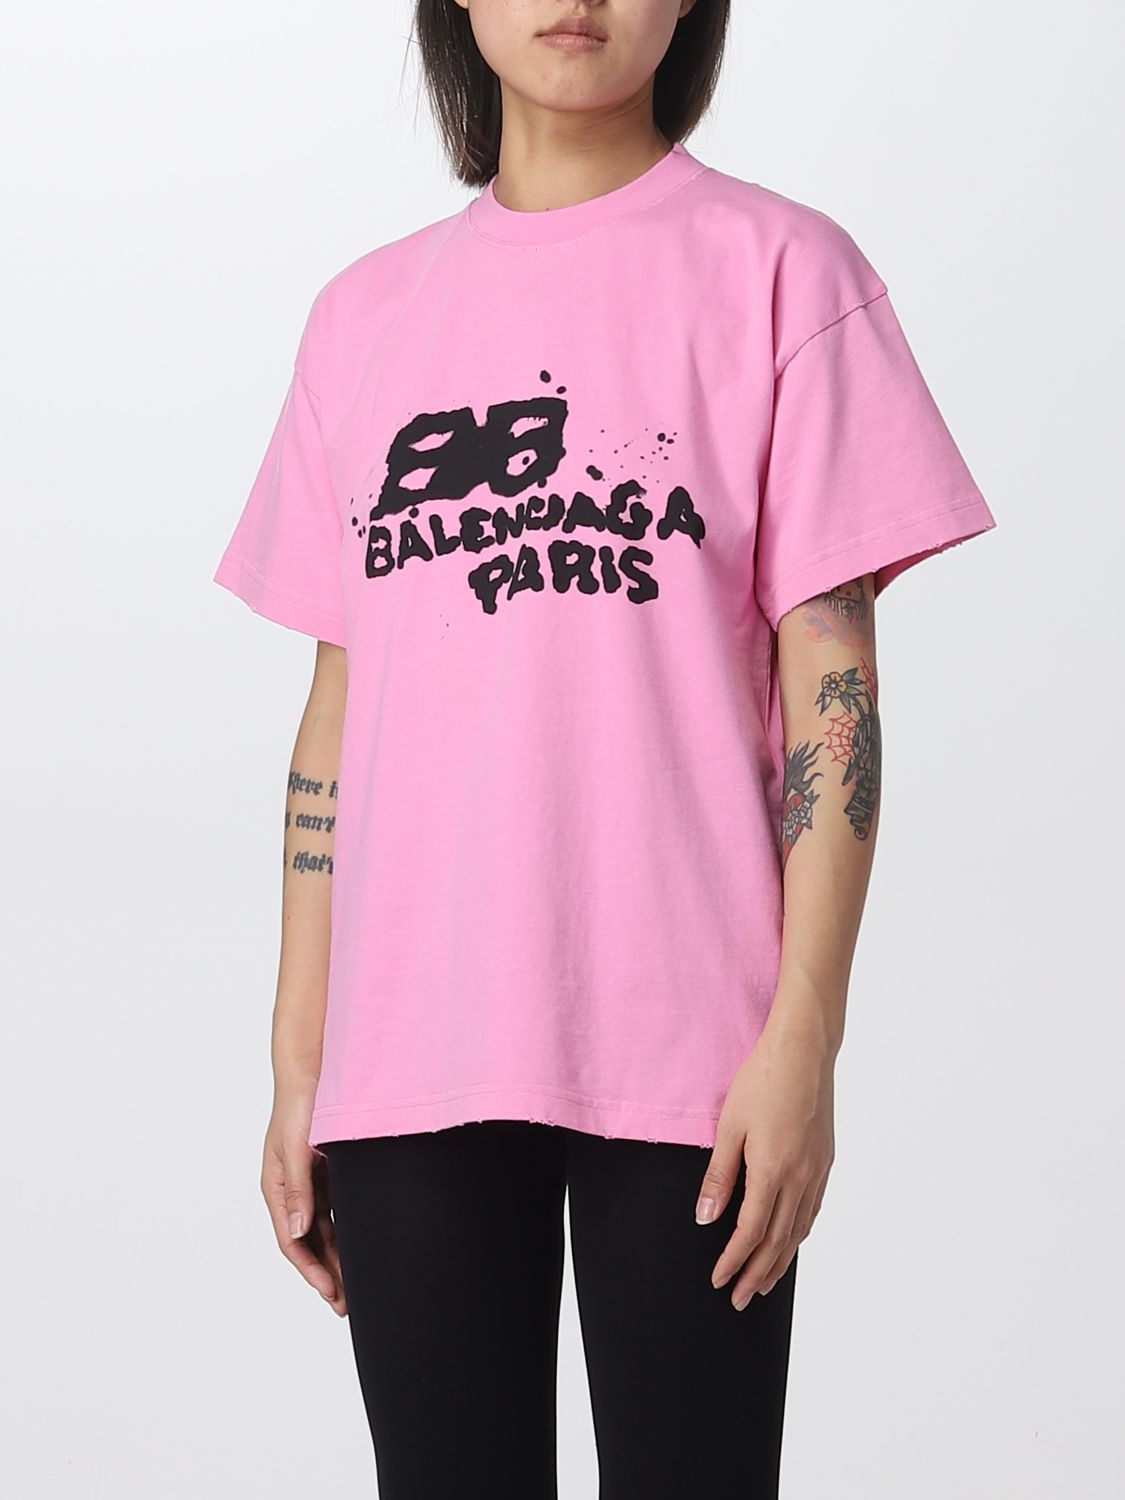 BALENCIAGA: Camiseta para mujer, Rosa | Camiseta Balenciaga 612965TNVN4 en línea en